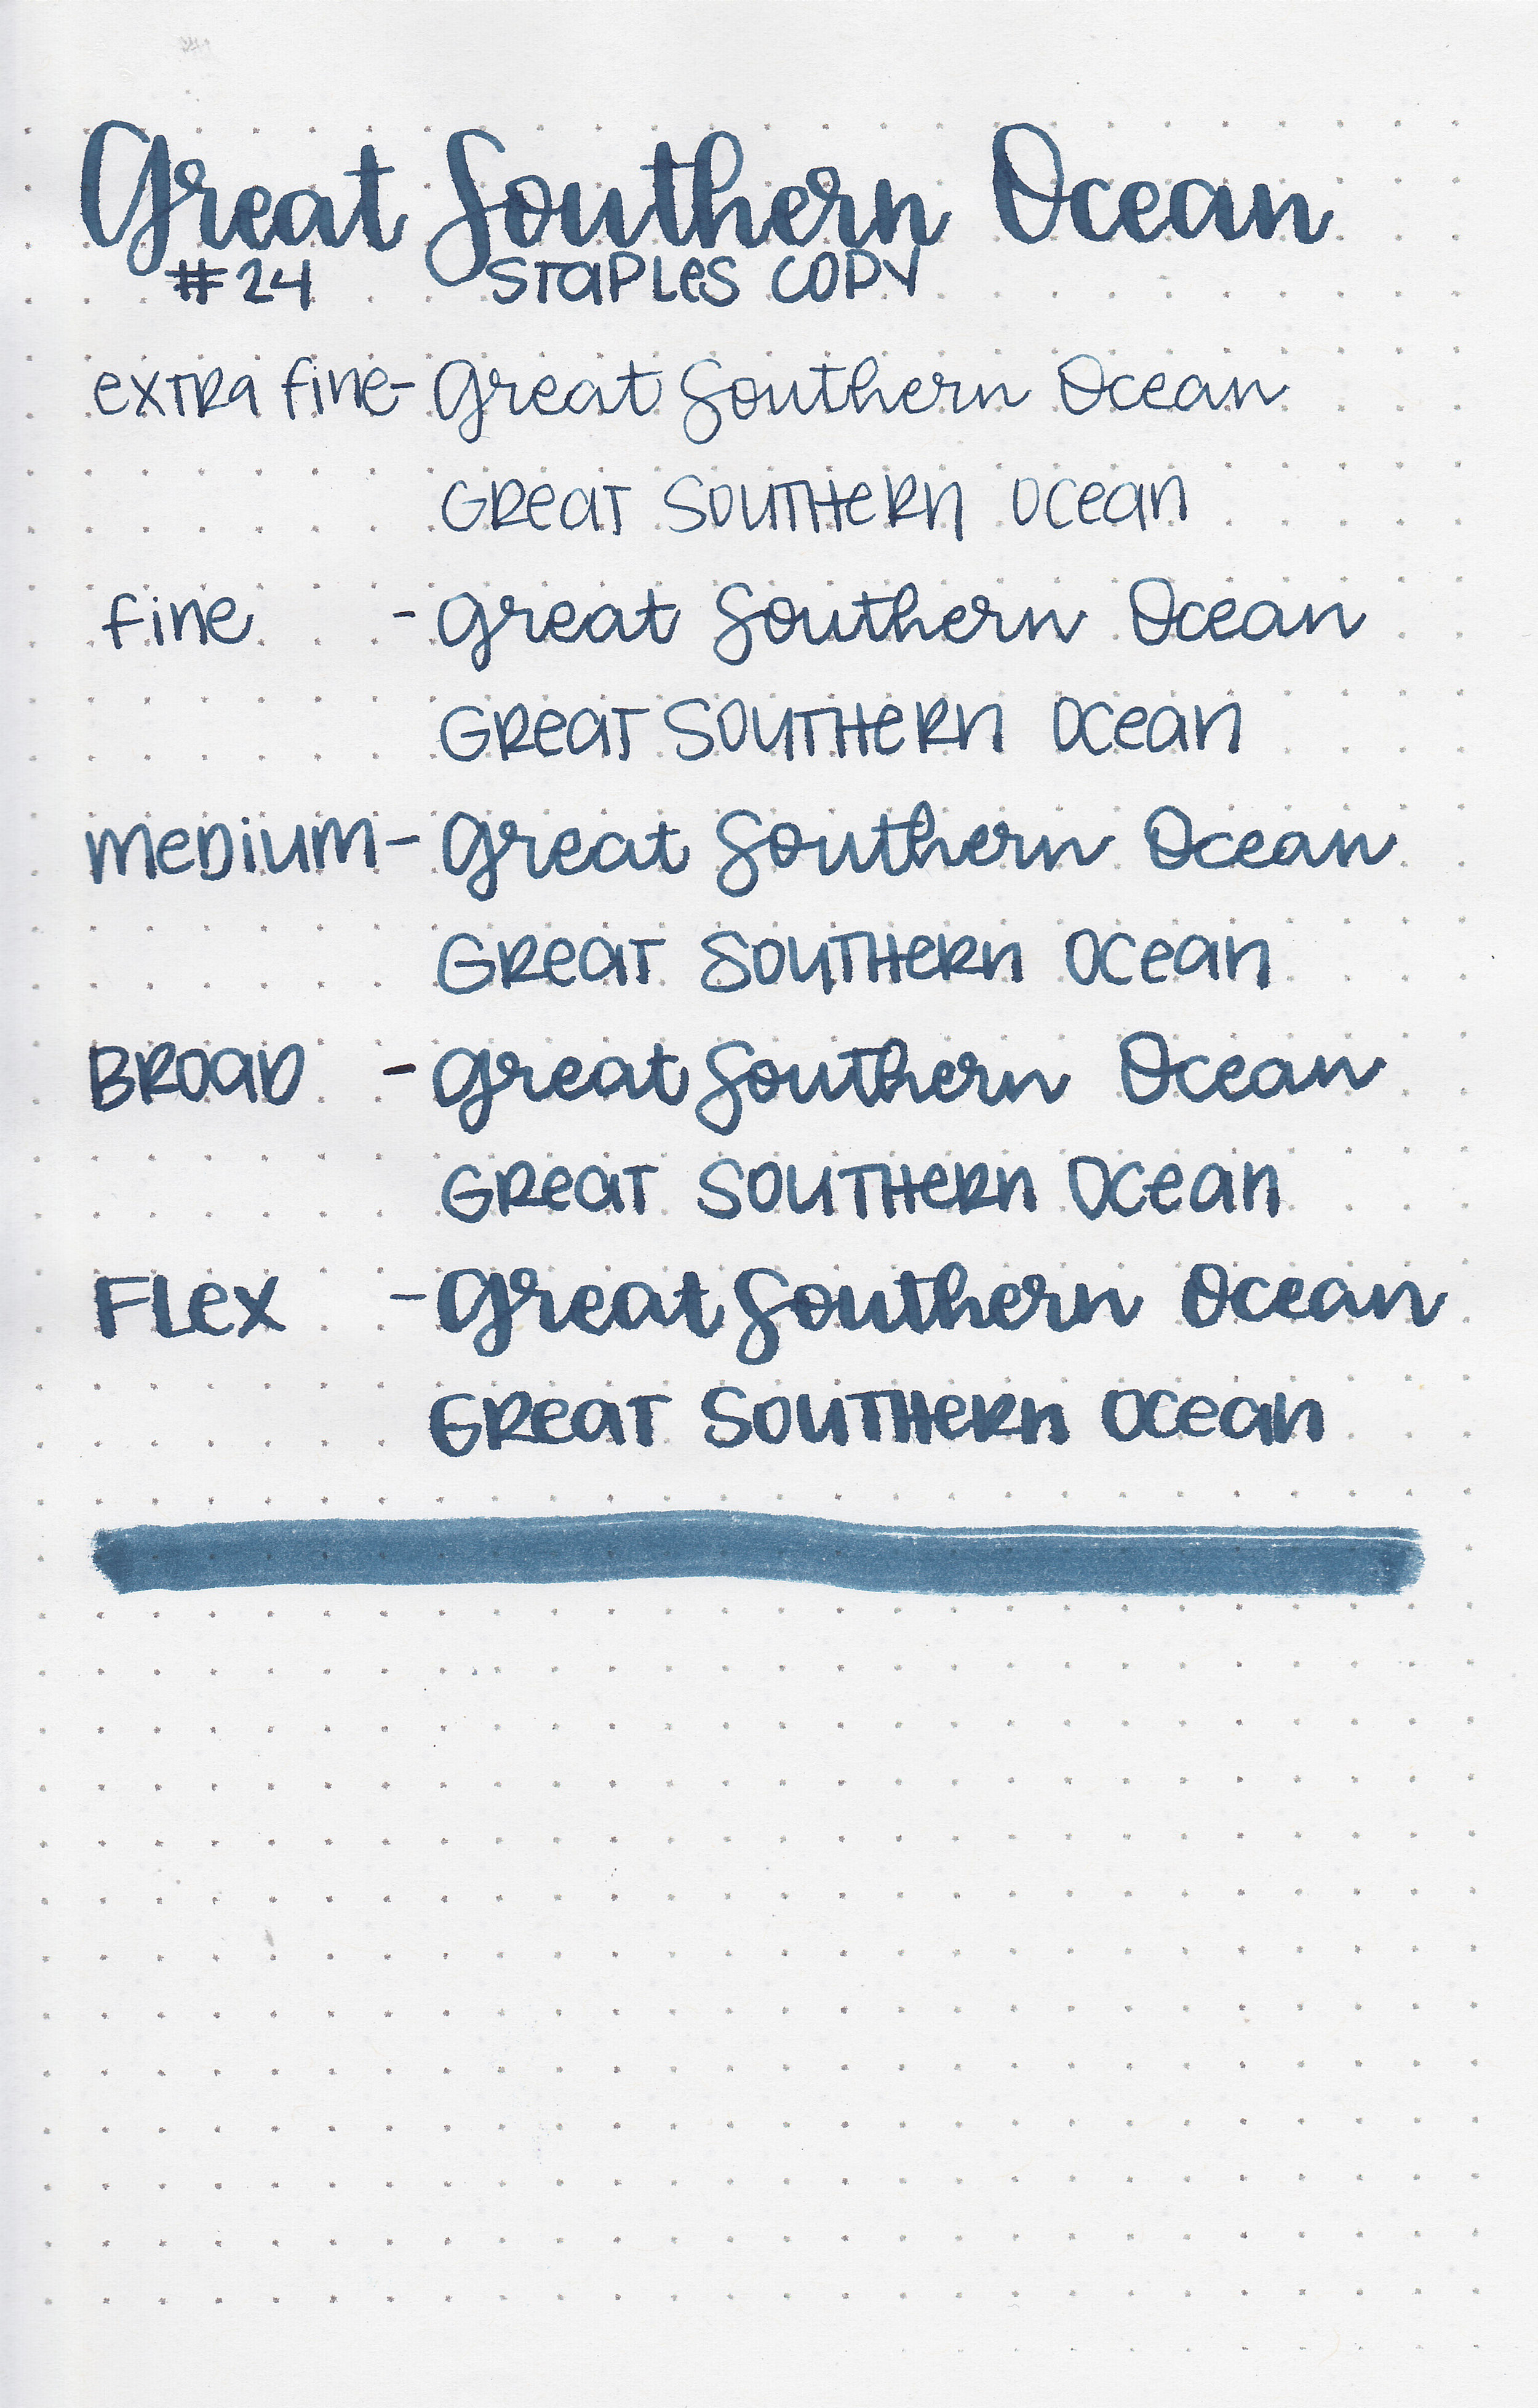 ro-great-southern-ocean-11.jpg